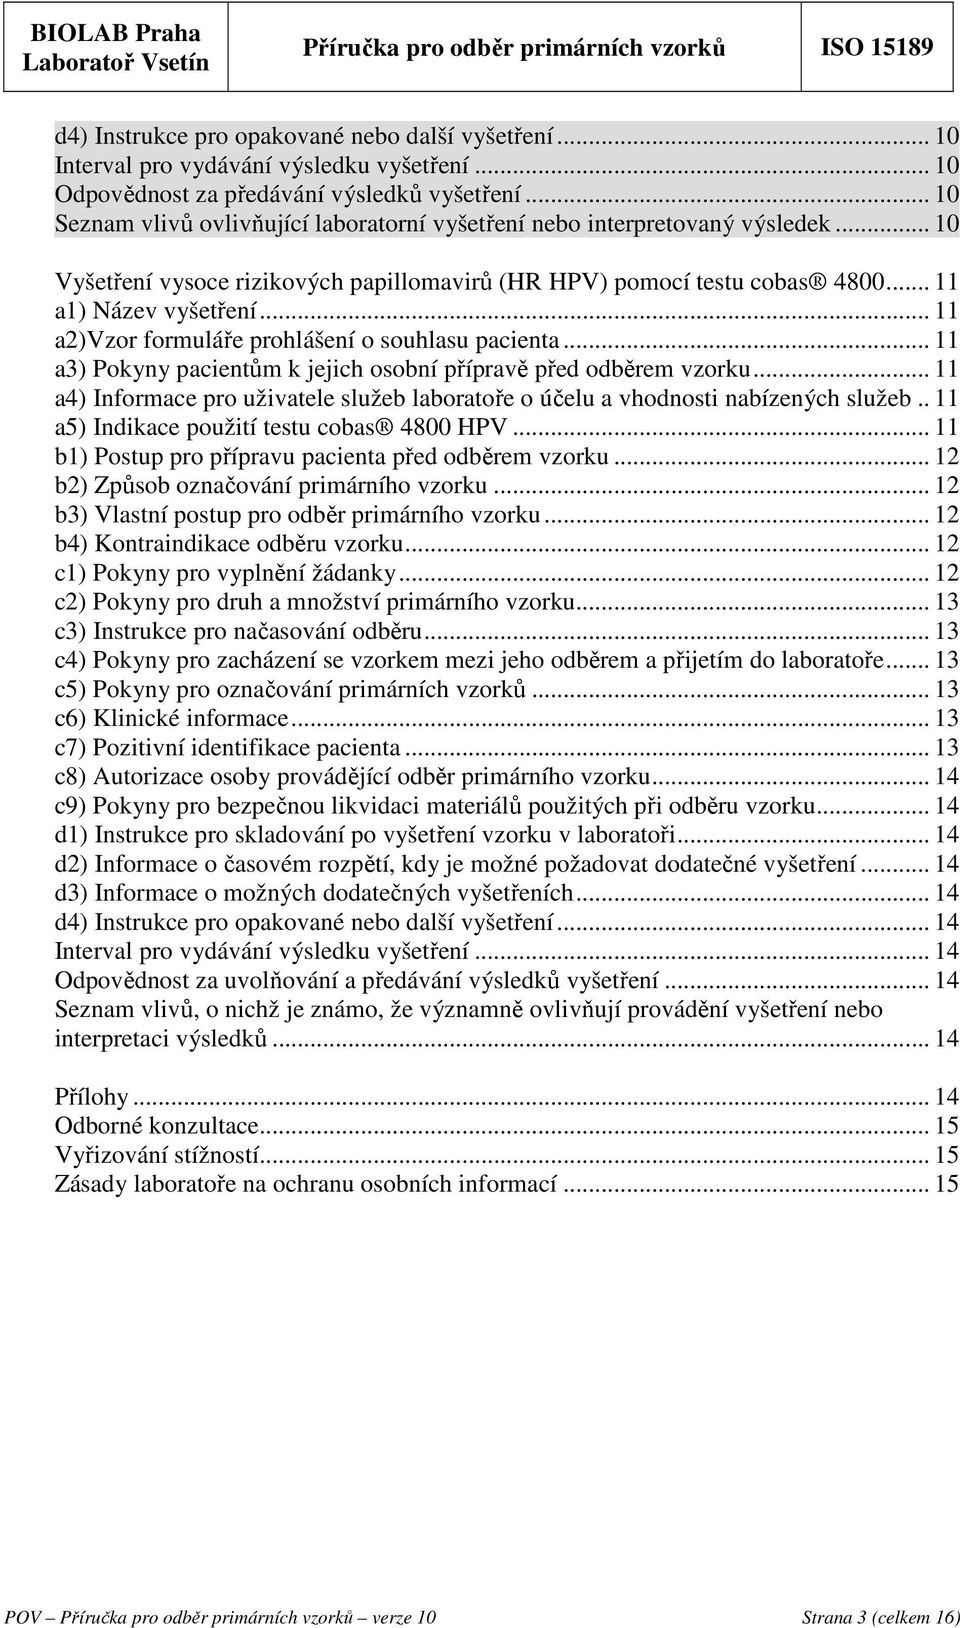 .. 11 a2)vzor formuláře prohlášení o souhlasu pacienta... 11 a3) Pokyny pacientům k jejich osobní přípravě před odběrem vzorku.